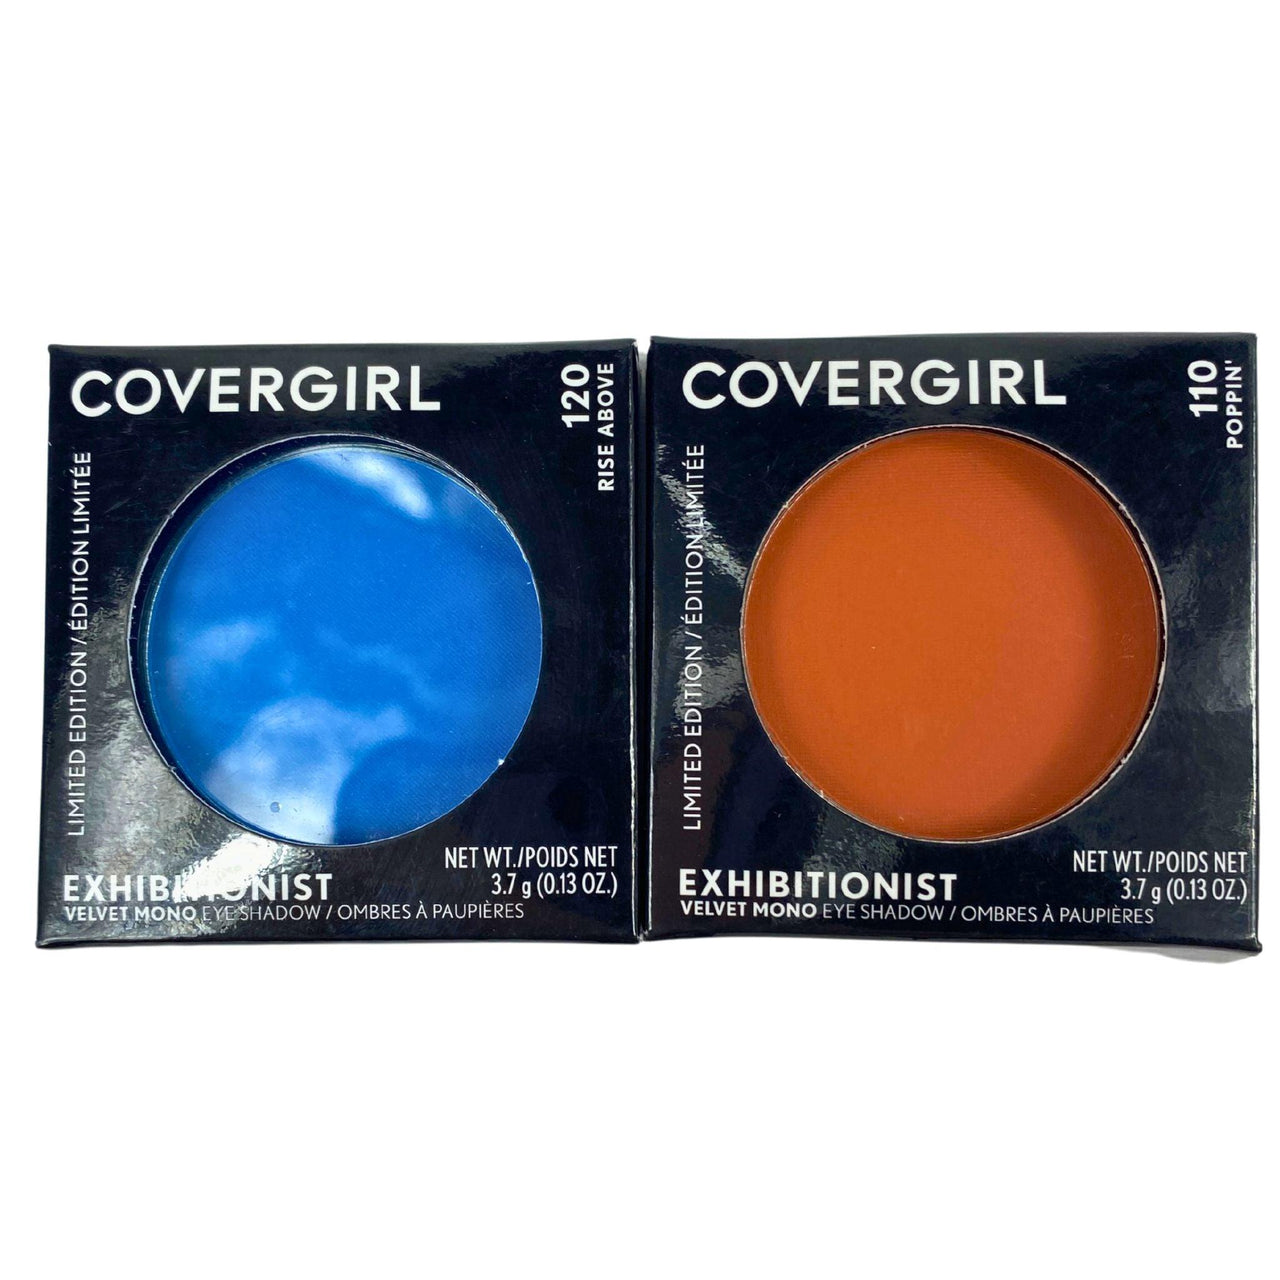 Covergirl Exhibitionist Velvet Mono Eyeshadow 0.13OZ (50 Pcs lot) - Discount Wholesalers Inc